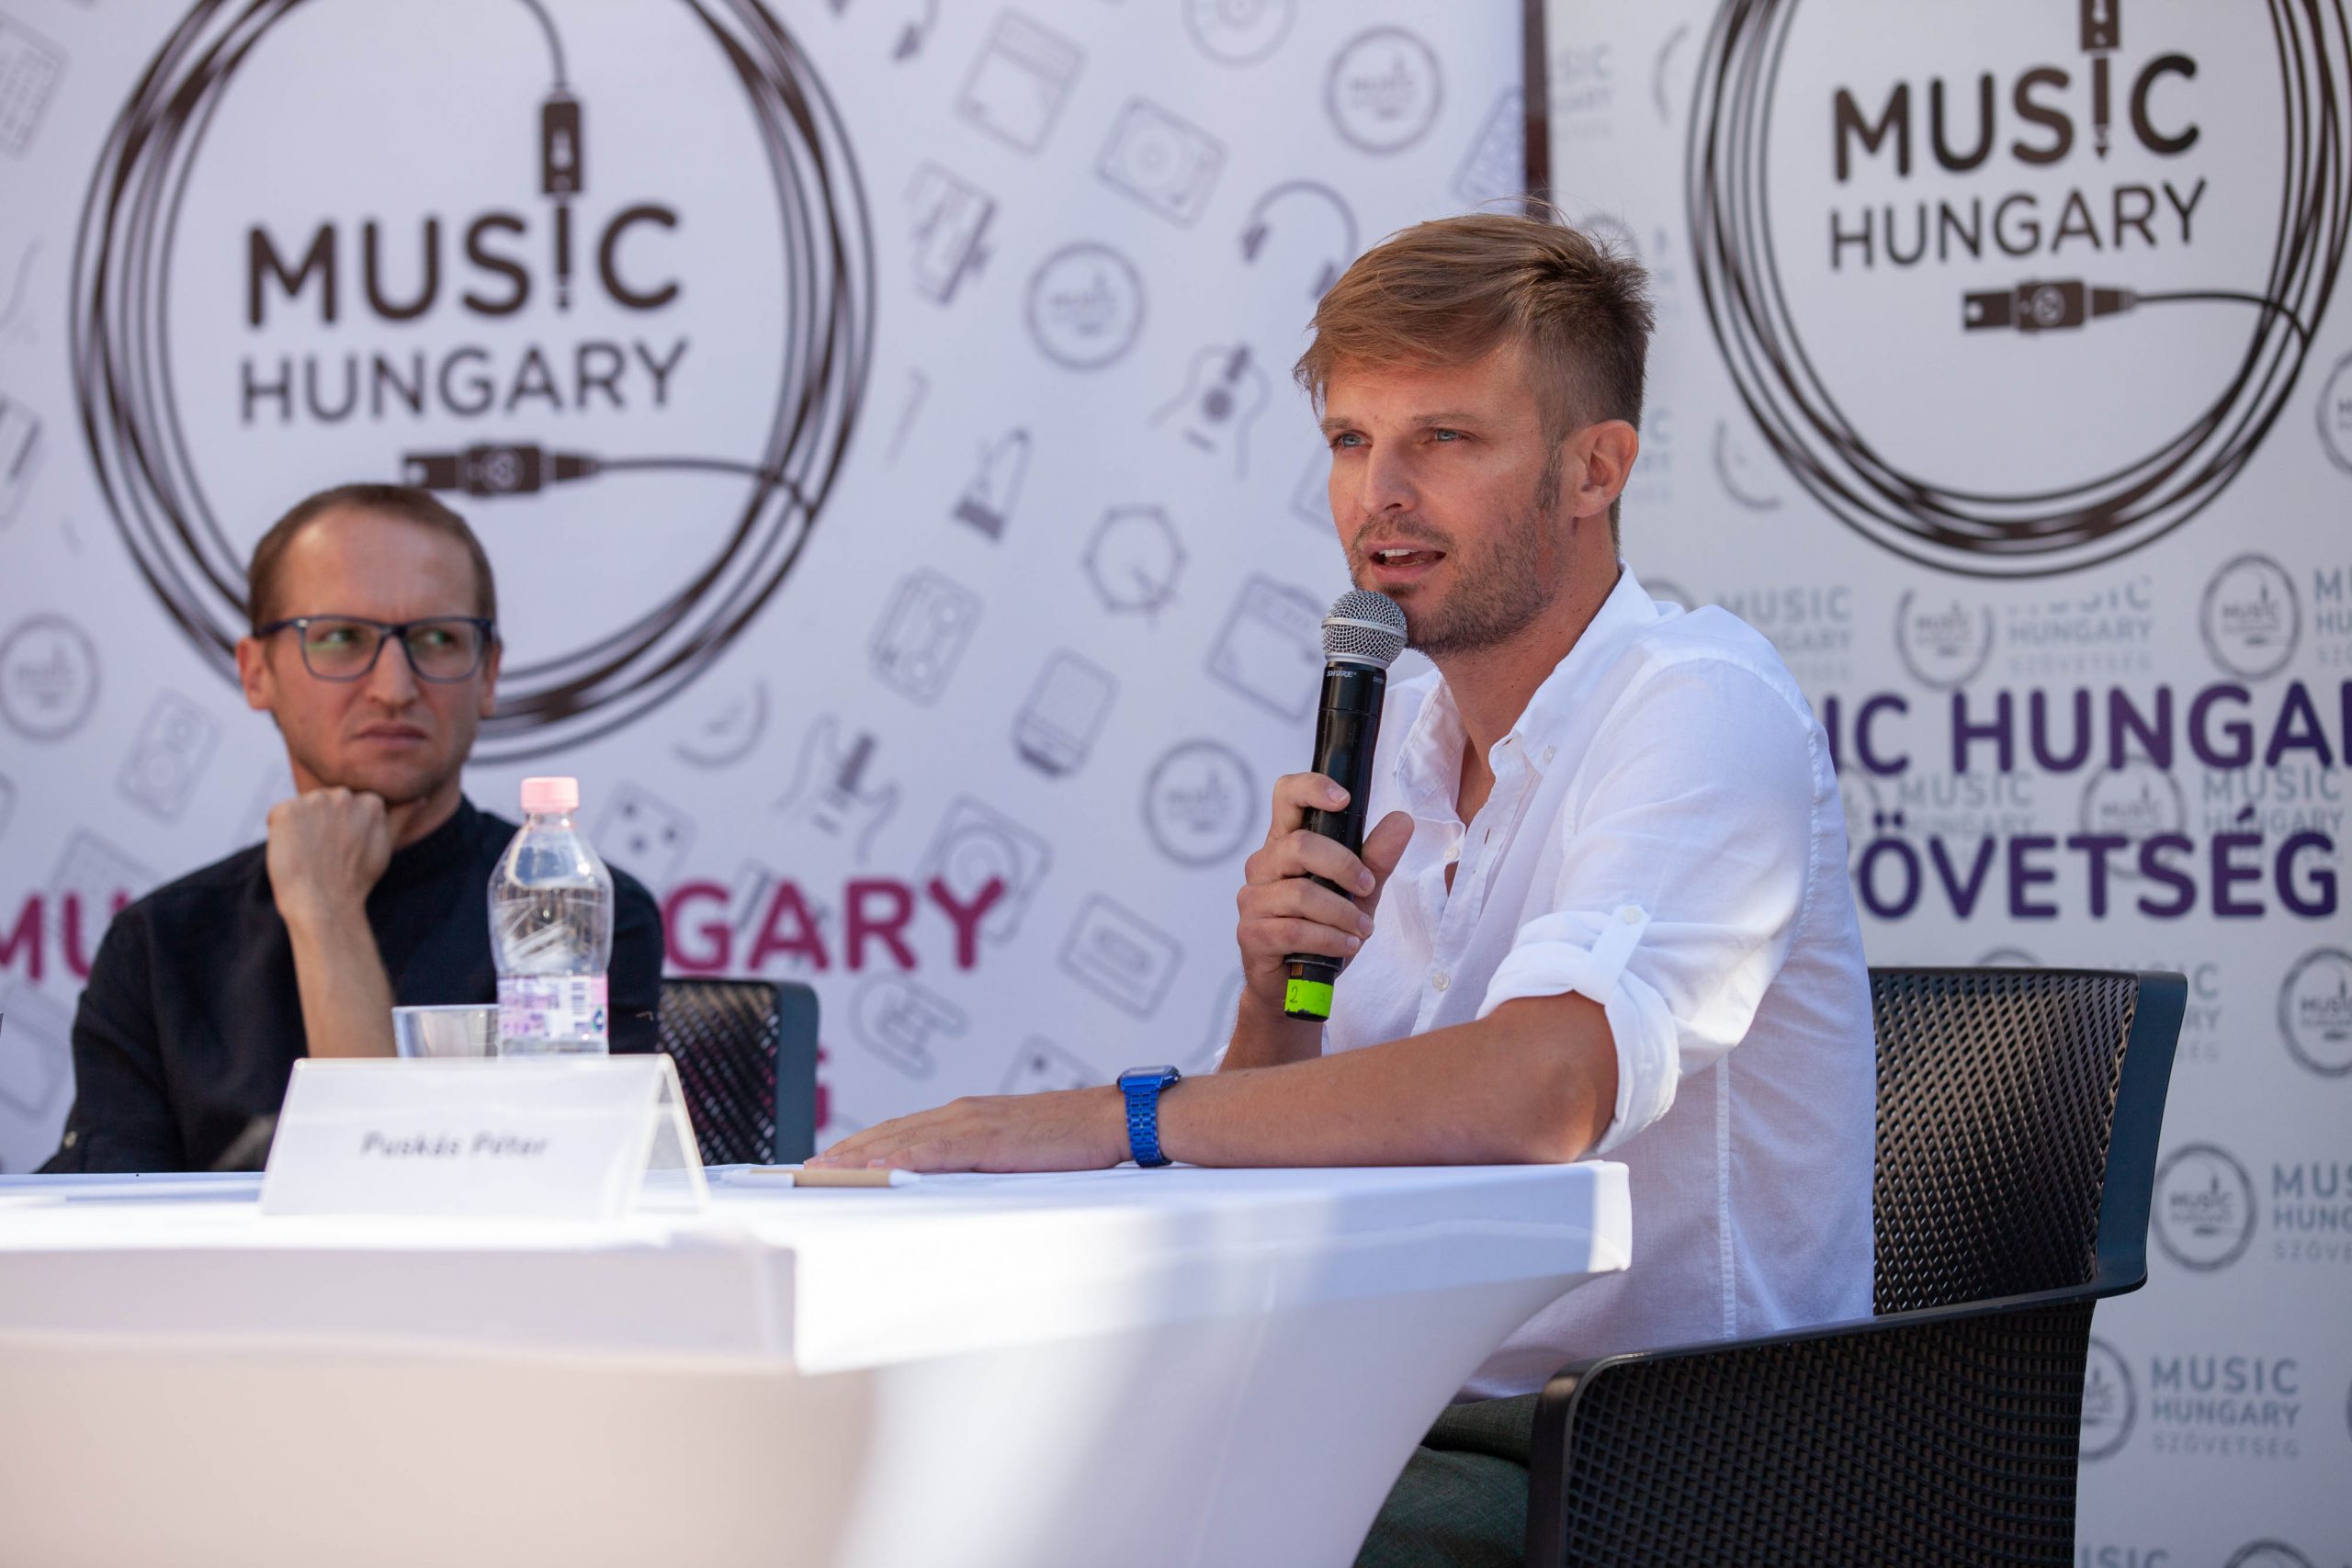 Jön az új könnyűzenei stratégia a veszprémi Music Hungary Konferencián